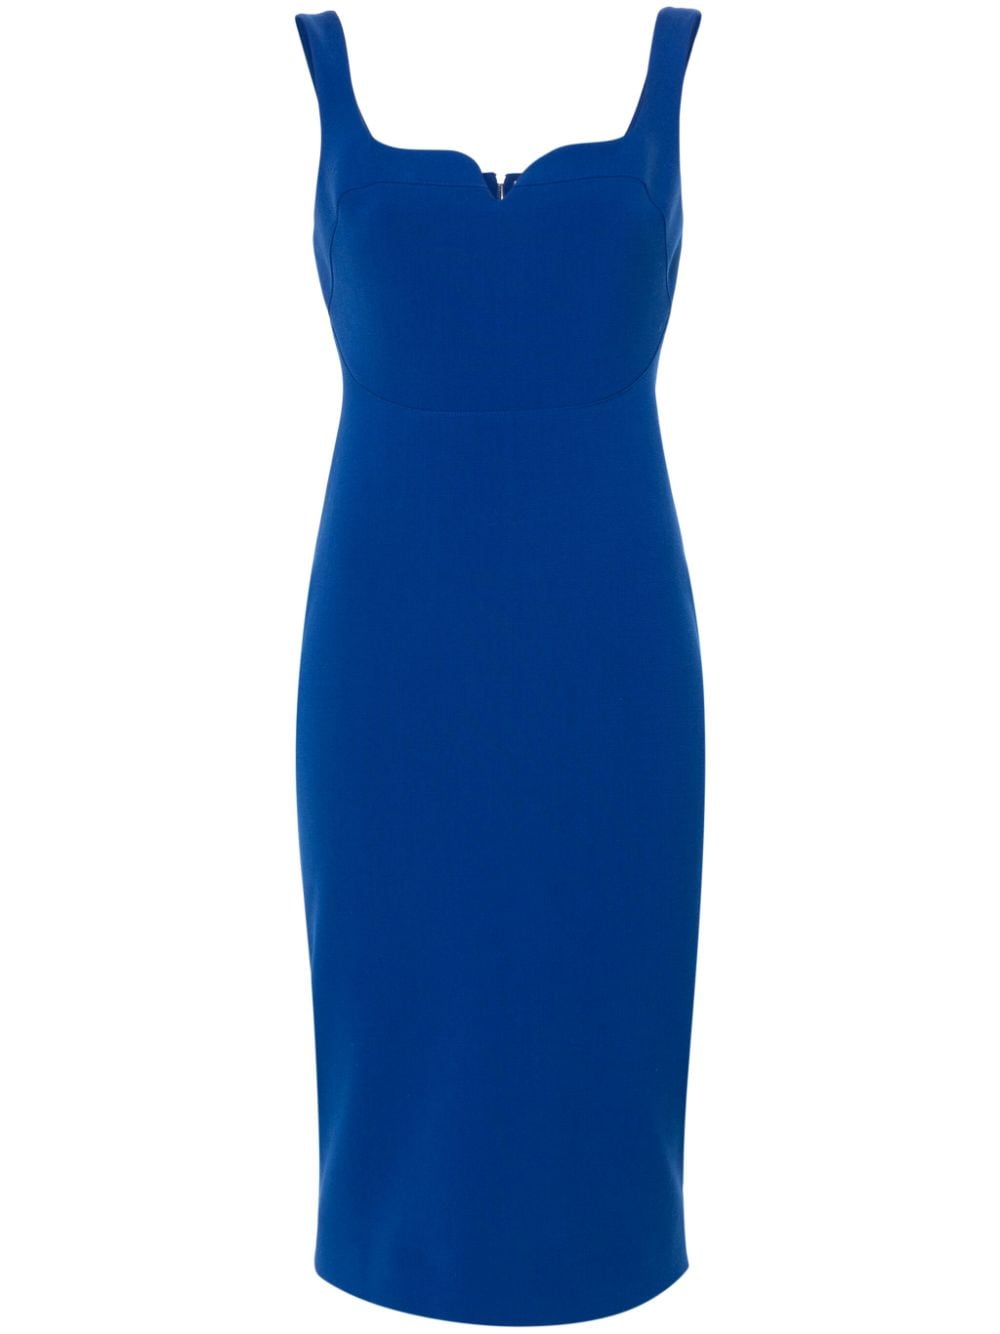 Victoria Beckham sleeveless crepe dress - Blue von Victoria Beckham